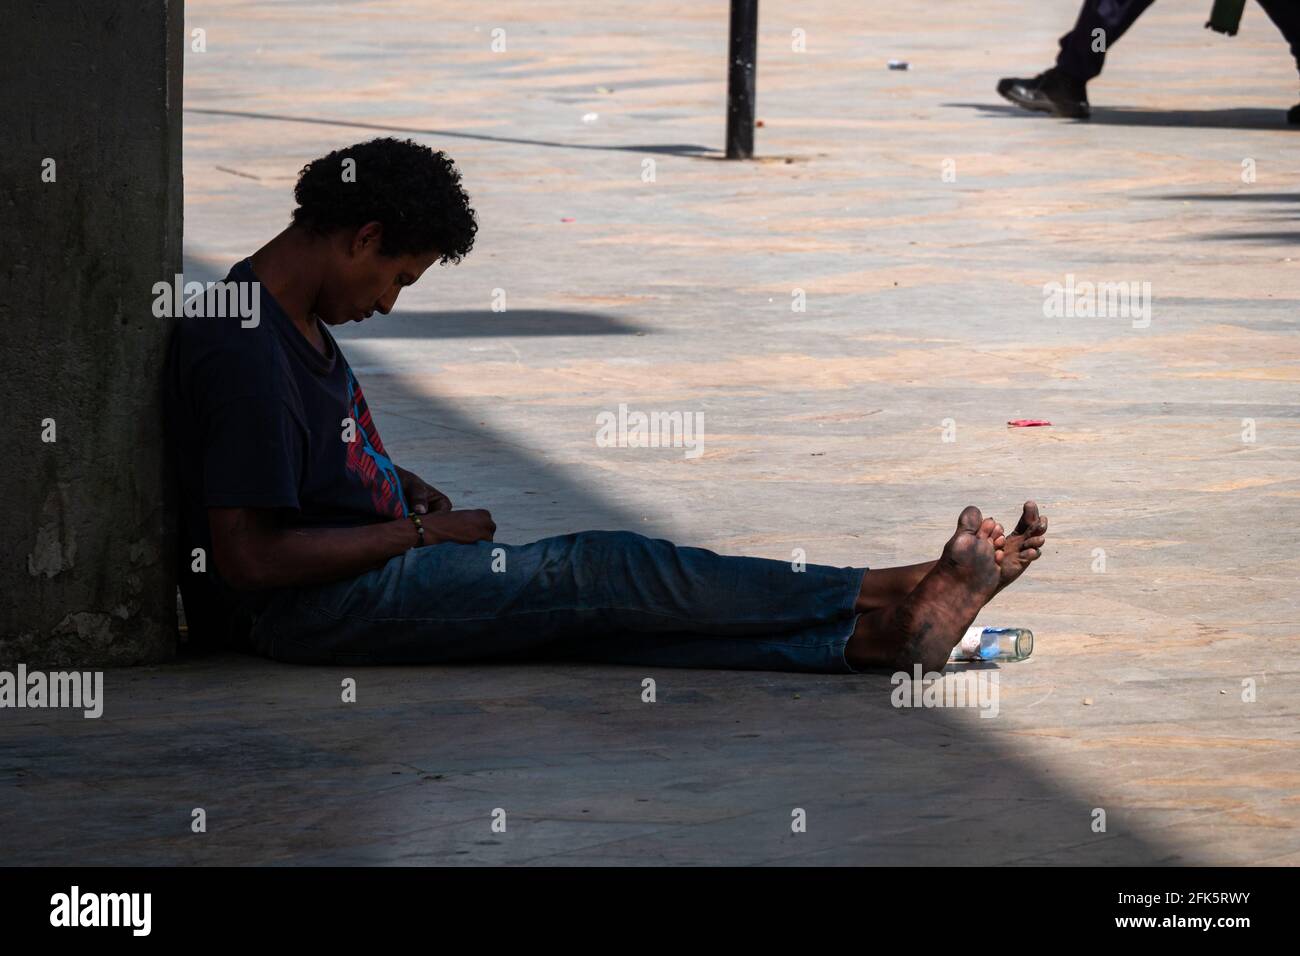 Medellin, Antioquia, Kolumbien - Januar 6 2021: Hispanischer Obdachloser sitzt an einer Betonwand und schaut traurig mit einer Alkoholflasche zu seinen Füßen herunter Stockfoto